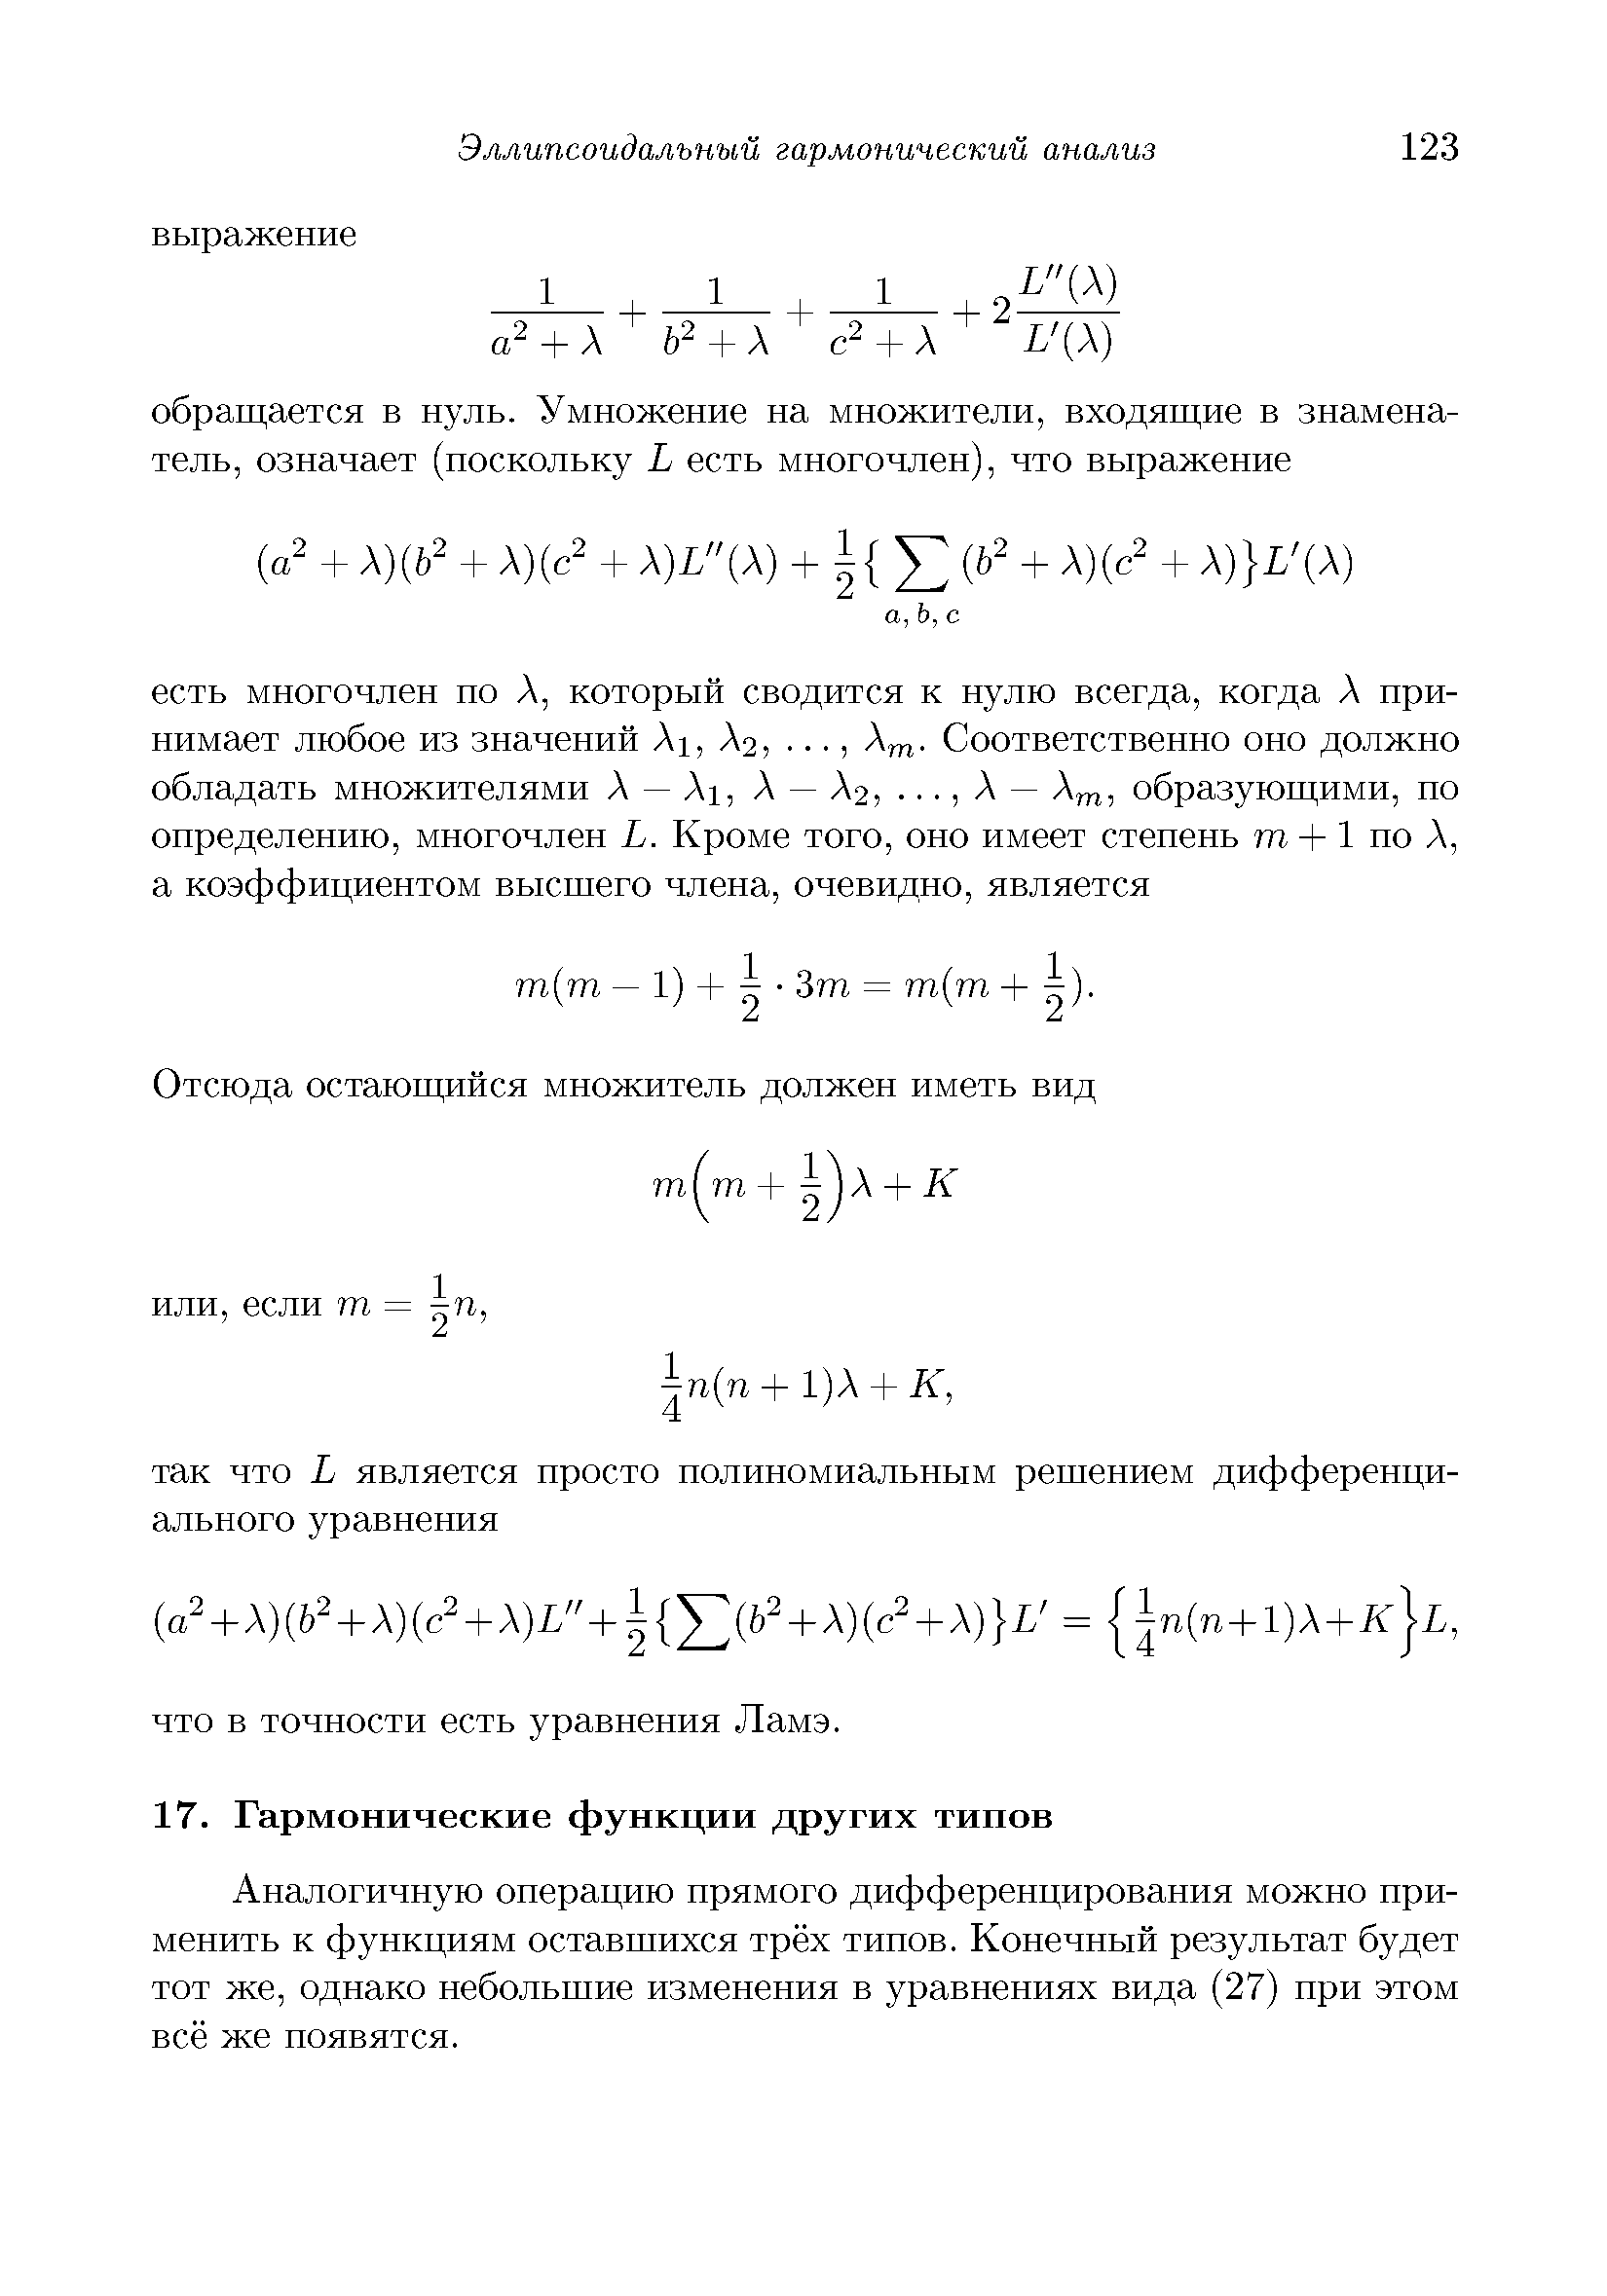 Аналогичную операцию прямого дифференцирования можно применить к функциям оставшихся трёх типов. Конечный результат будет тот же, однако небольшие изменения в уравнениях вида (27) при этом всё же появятся.
